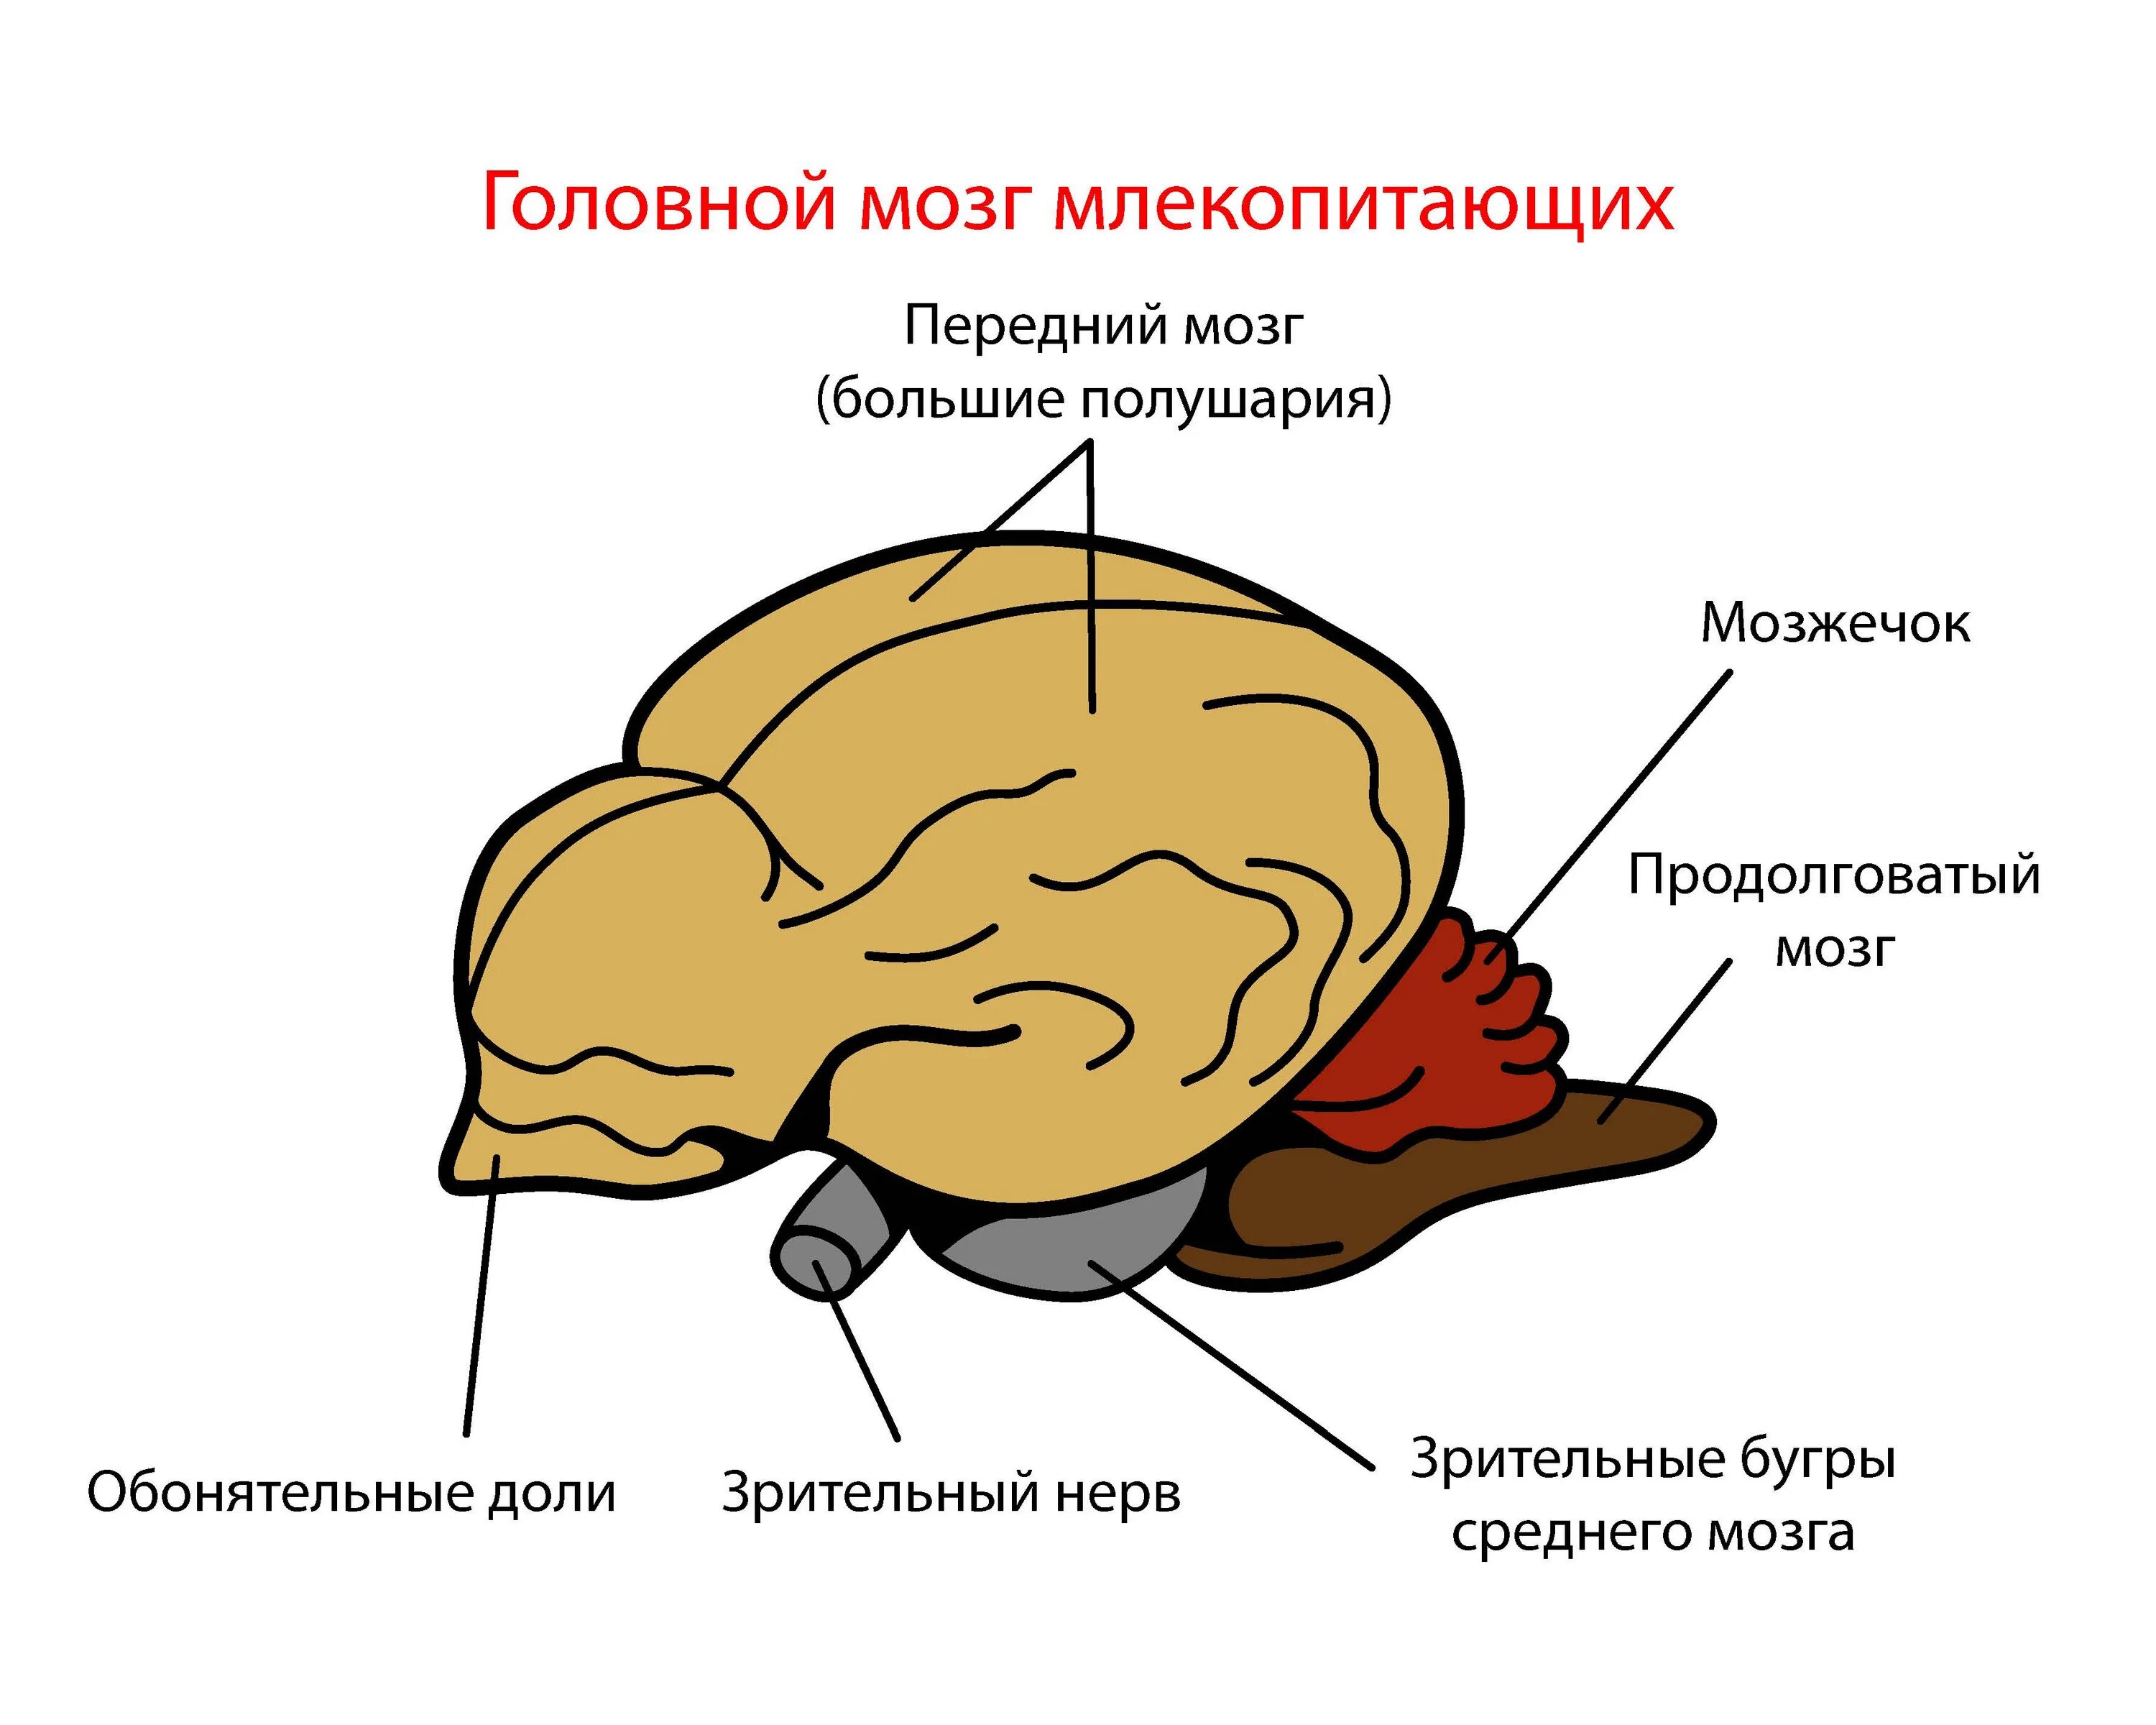 Отделы входящие в состав головного мозга млекопитающих. Головной мозг млекопитающих. Отделы головного мозга млекопитающих. Строение головного мозга млекопитающих. Мозг млекопитающего рисунок.